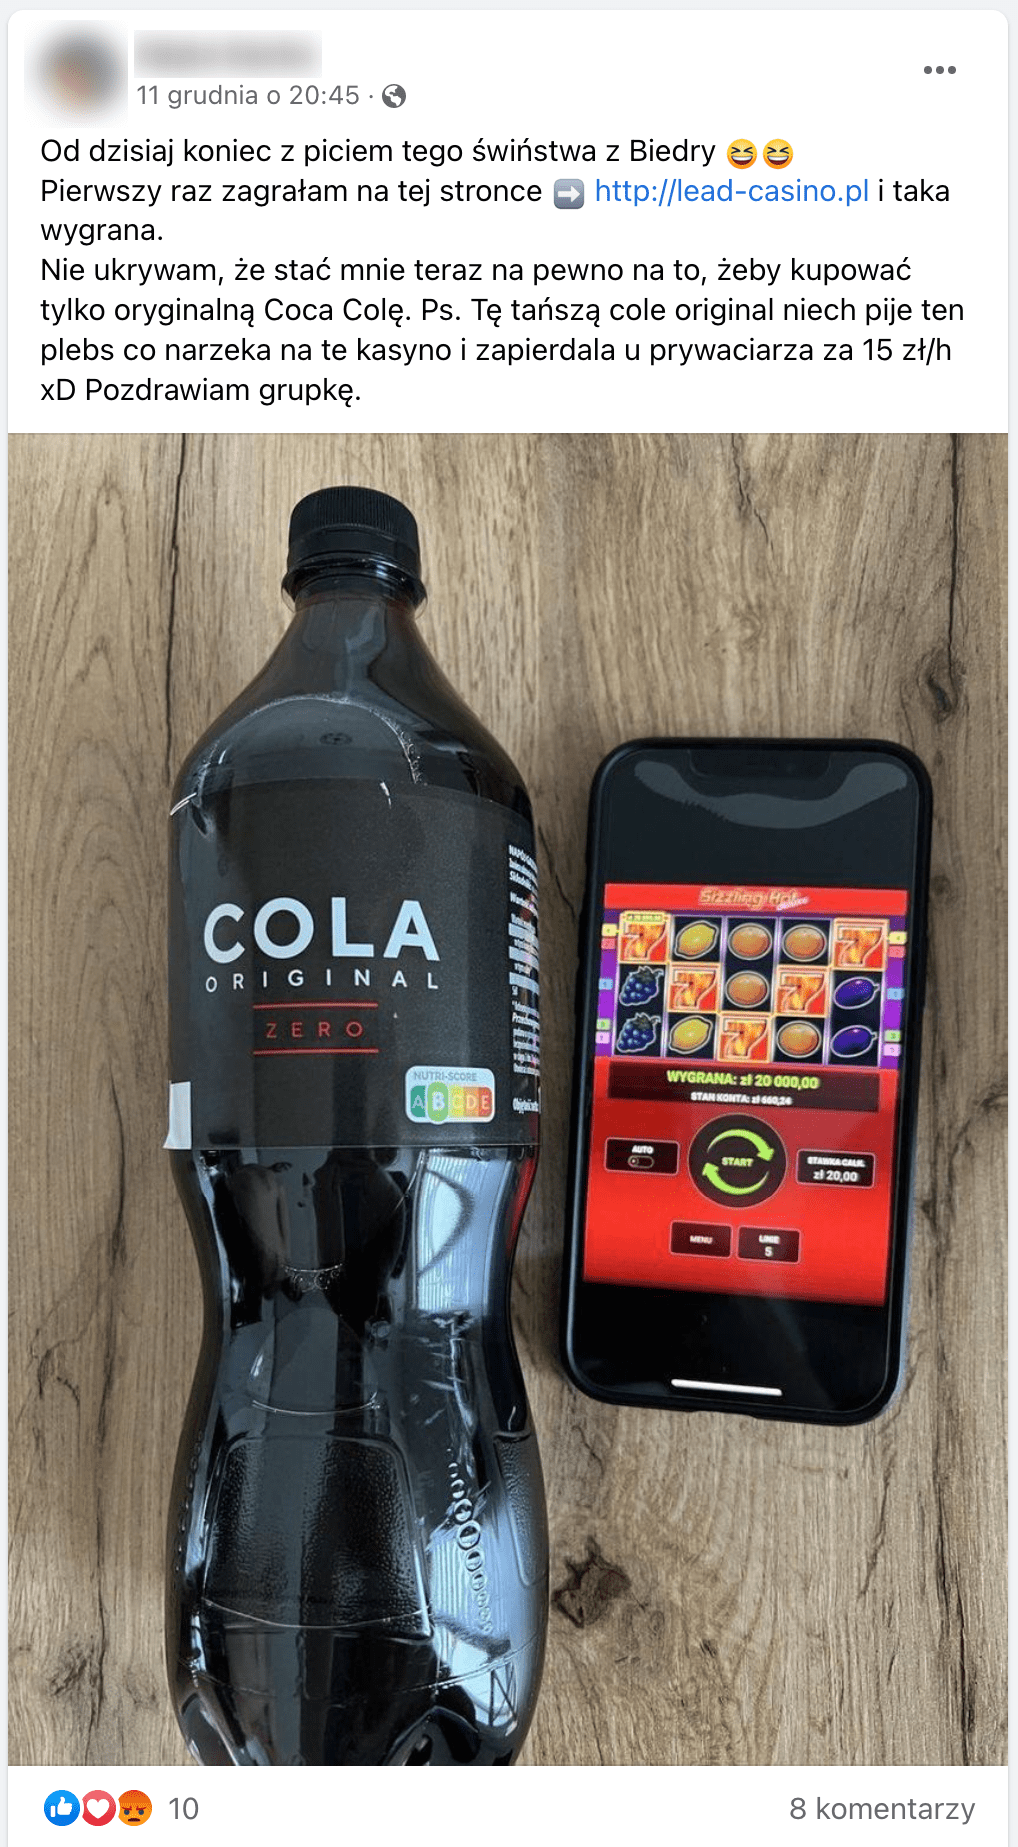 Zrzut ekranu omawianego posta. Dołączono do niego zdjęcie telefonu z otwartą aplikacją położonego obok butelki napoju „COLA Original Zero”.